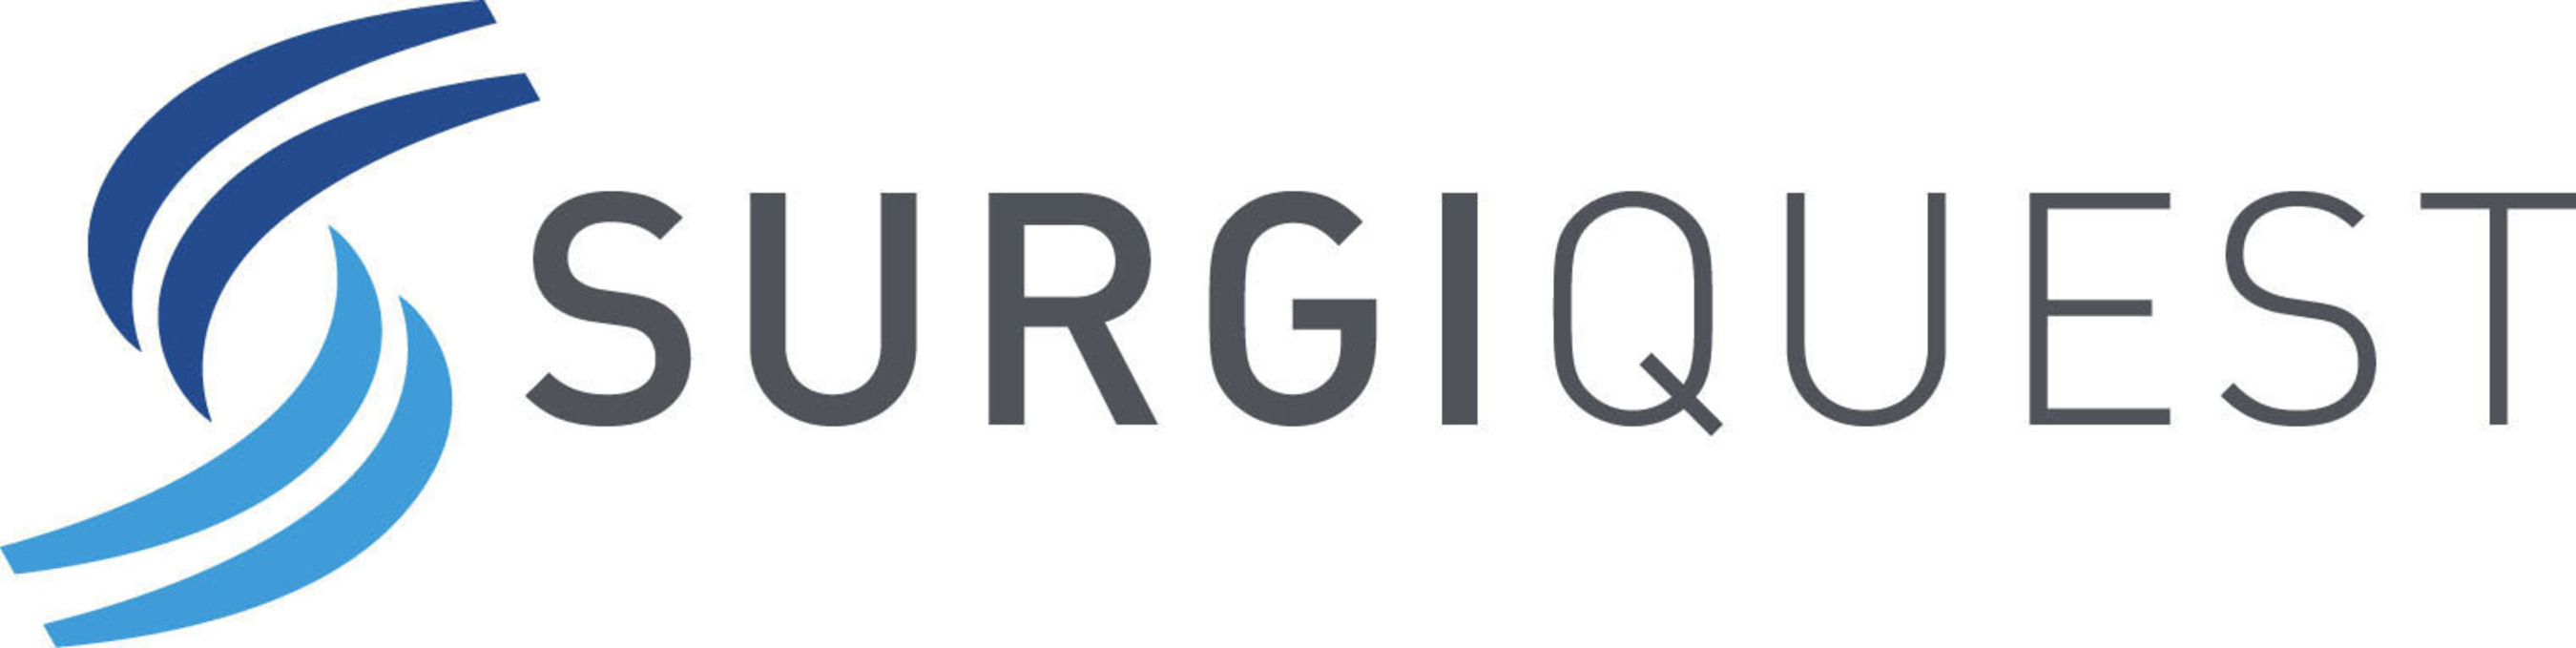 SurgiQuest, Inc. Logo.